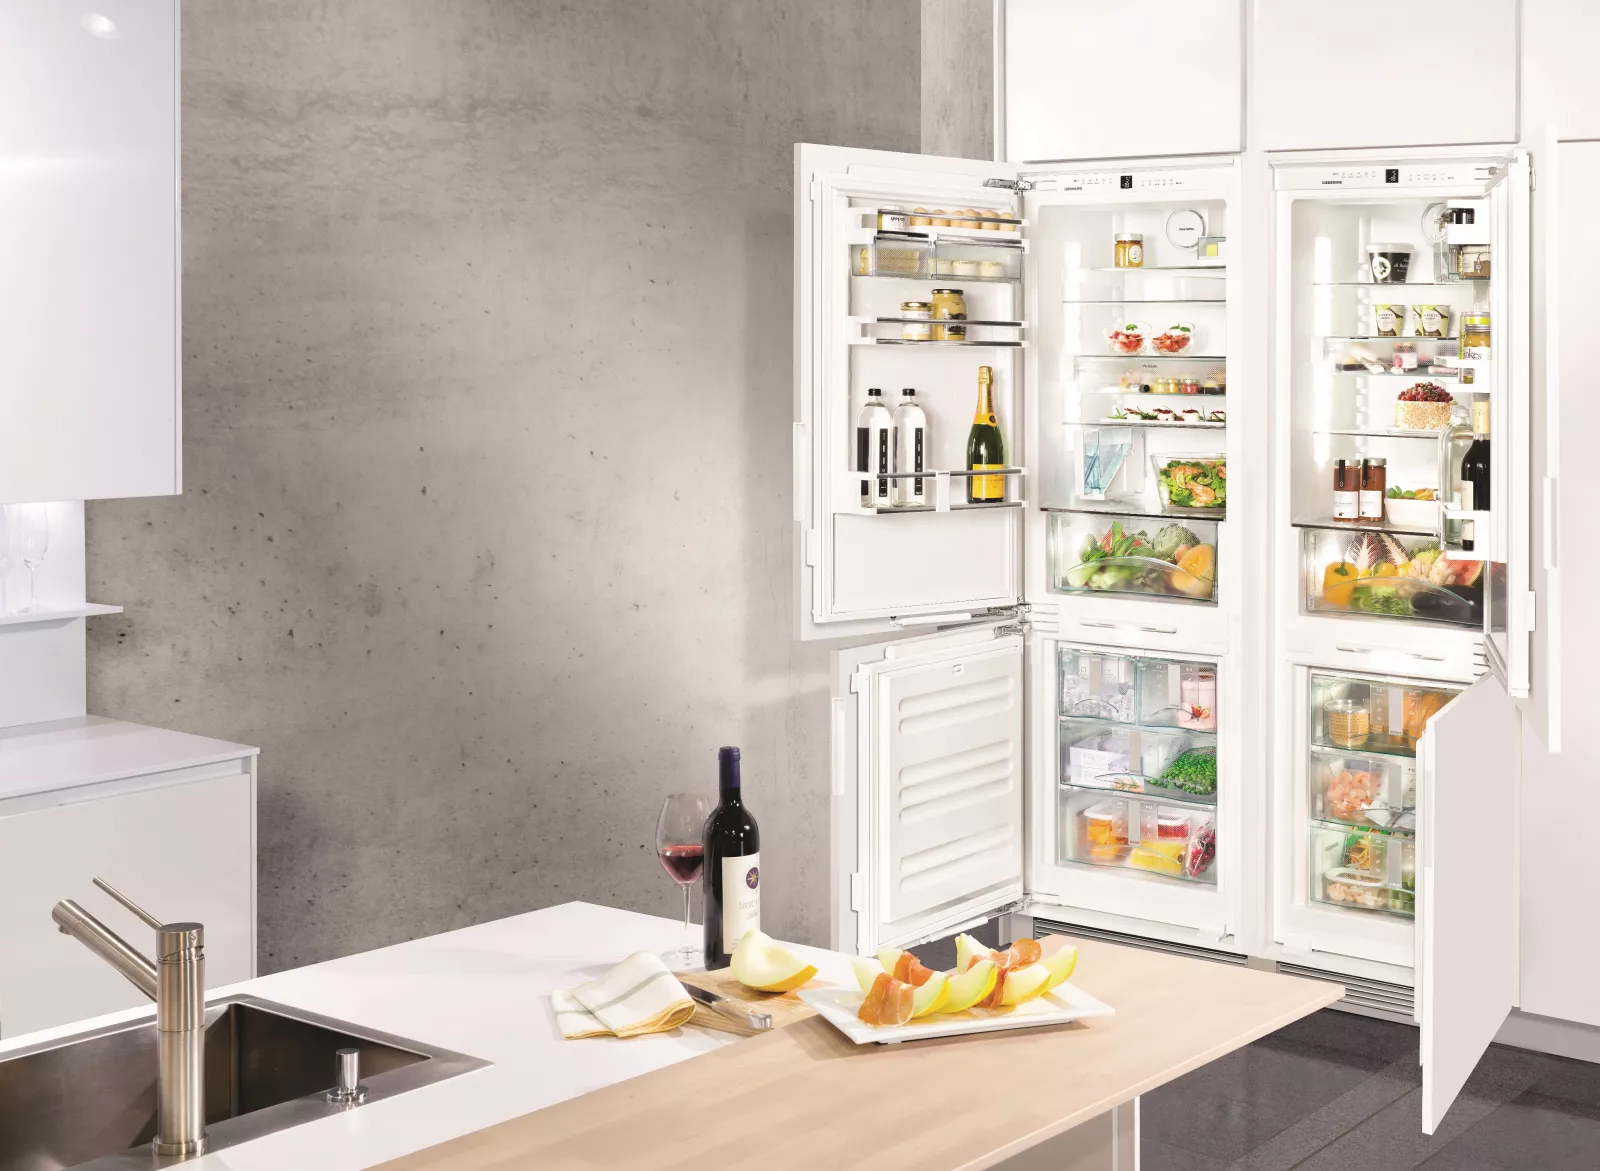 Холодильник встраиваемый двухкамерный no frost. Liebherr ICN 3386. Холодильник 3386 Либхер встраиваемый. Встроенный холодильник Либхер. Либхер холодильник встраиваемый двухкамерный.